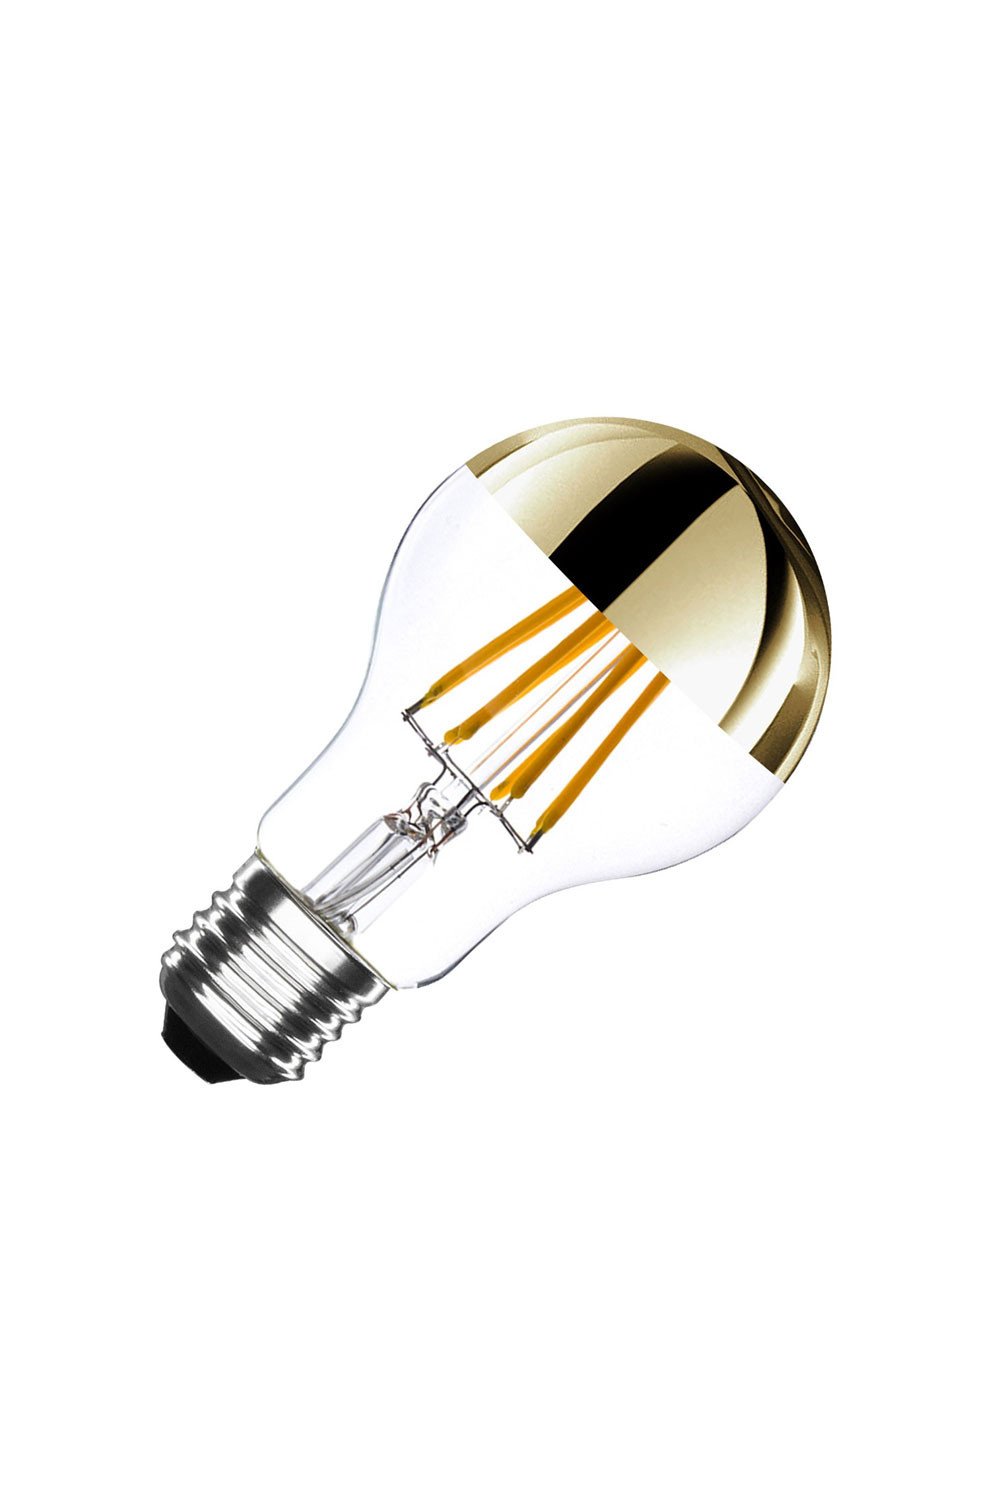 Lampada LED E27 Regolabile con Filamento Reflect A60 6W, immagine della galleria 1